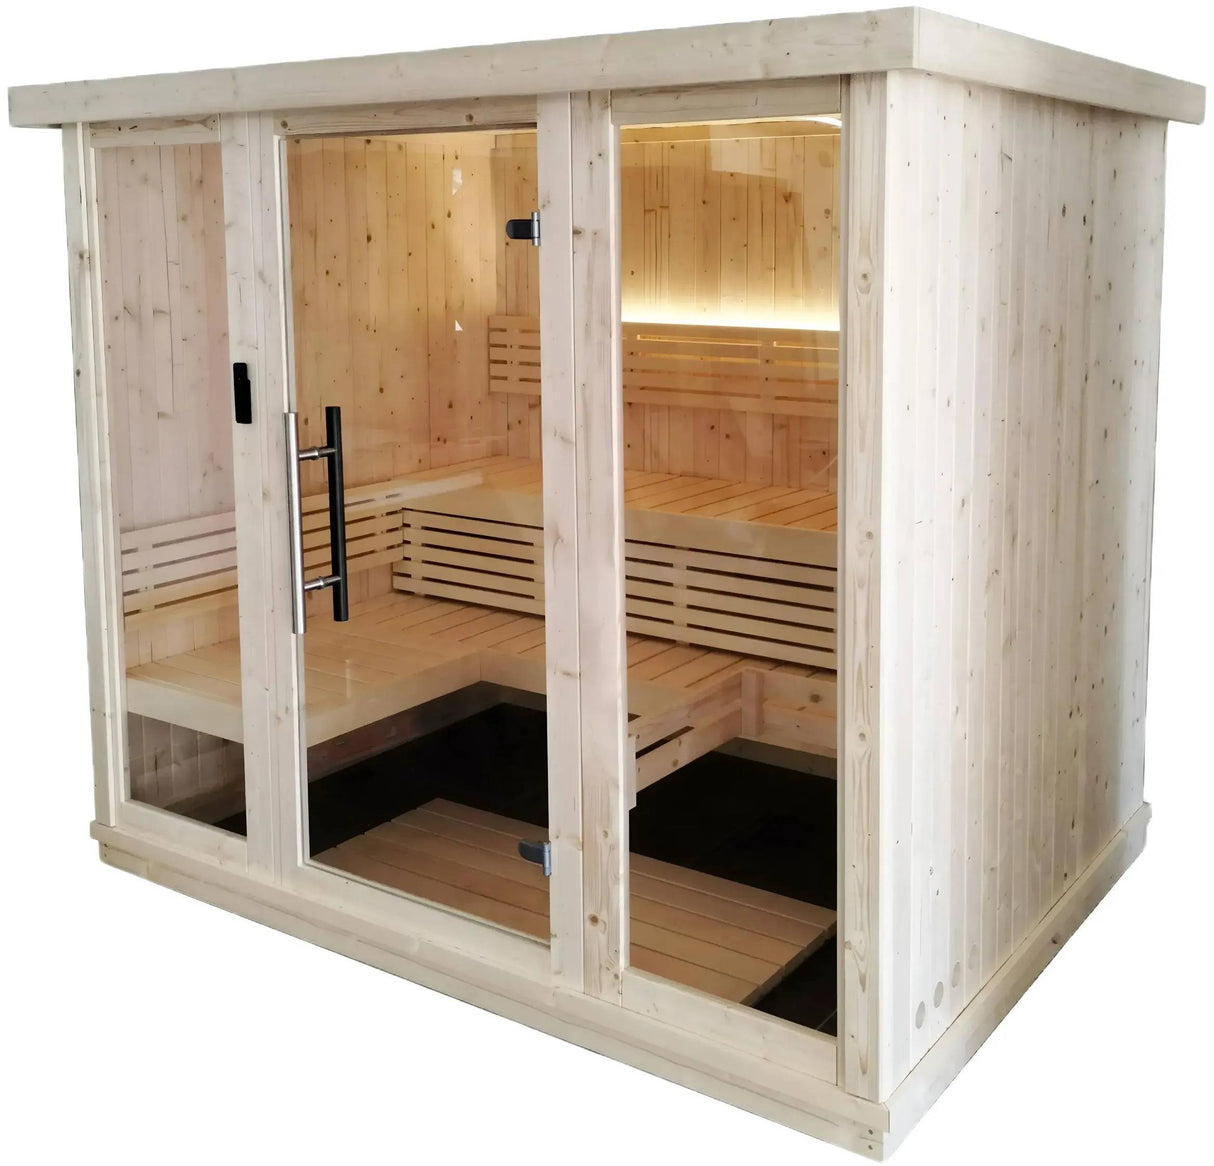 ZiahCare's SaunaLife Model X7 Indoor Home Sauna Kit Mockup Image 3